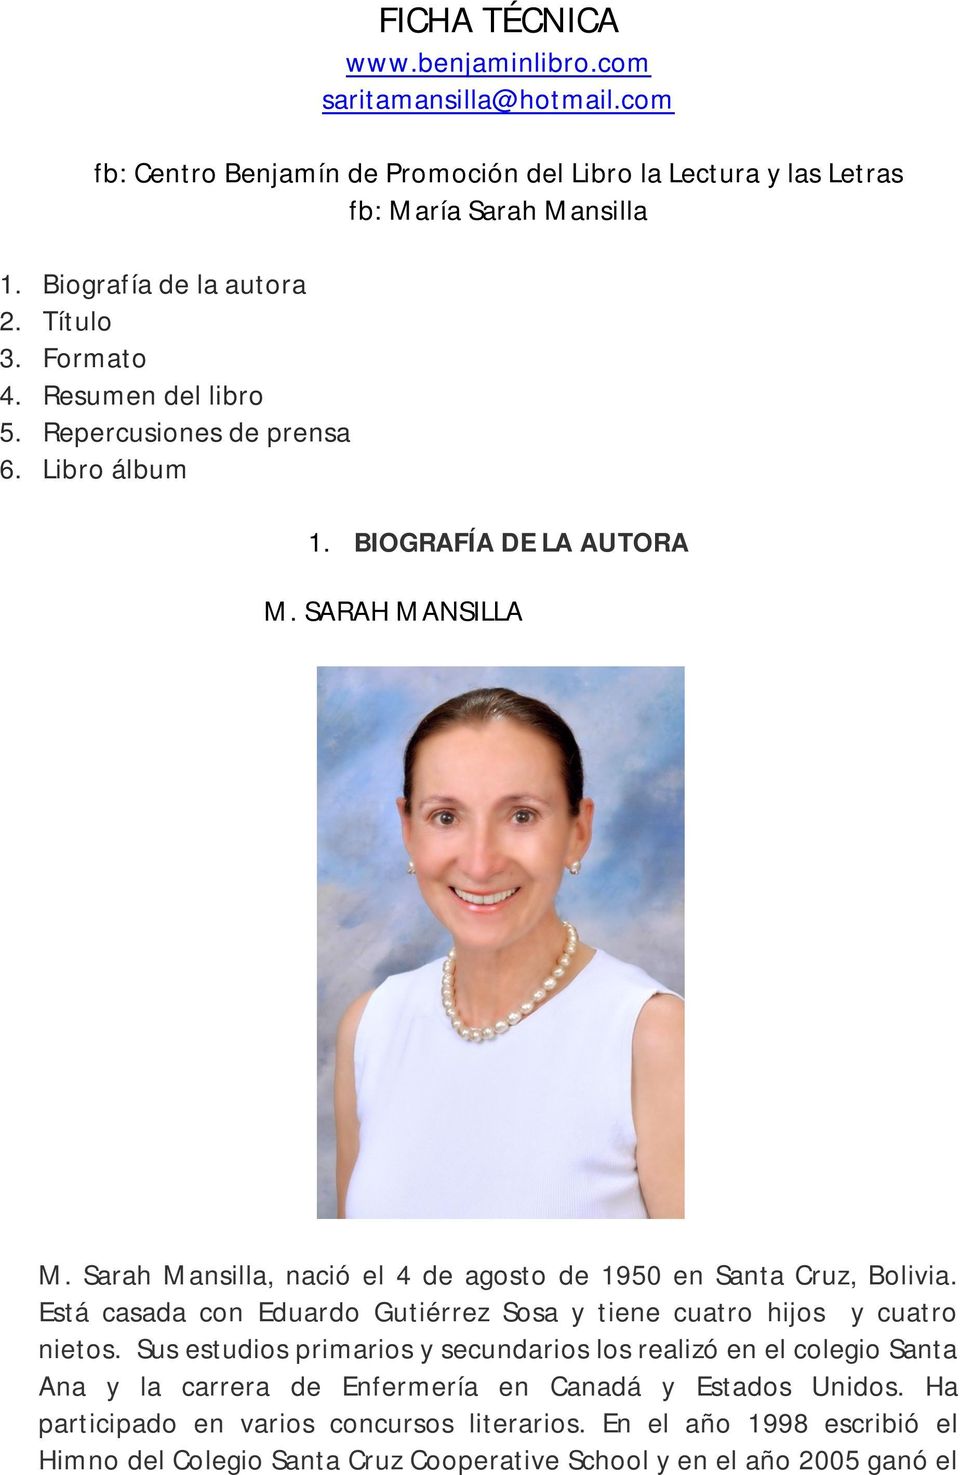 Sarah Mansilla, nació el 4 de agosto de 1950 en Santa Cruz, Bolivia. Está casada con Eduardo Gutiérrez Sosa y tiene cuatro hijos y cuatro nietos.